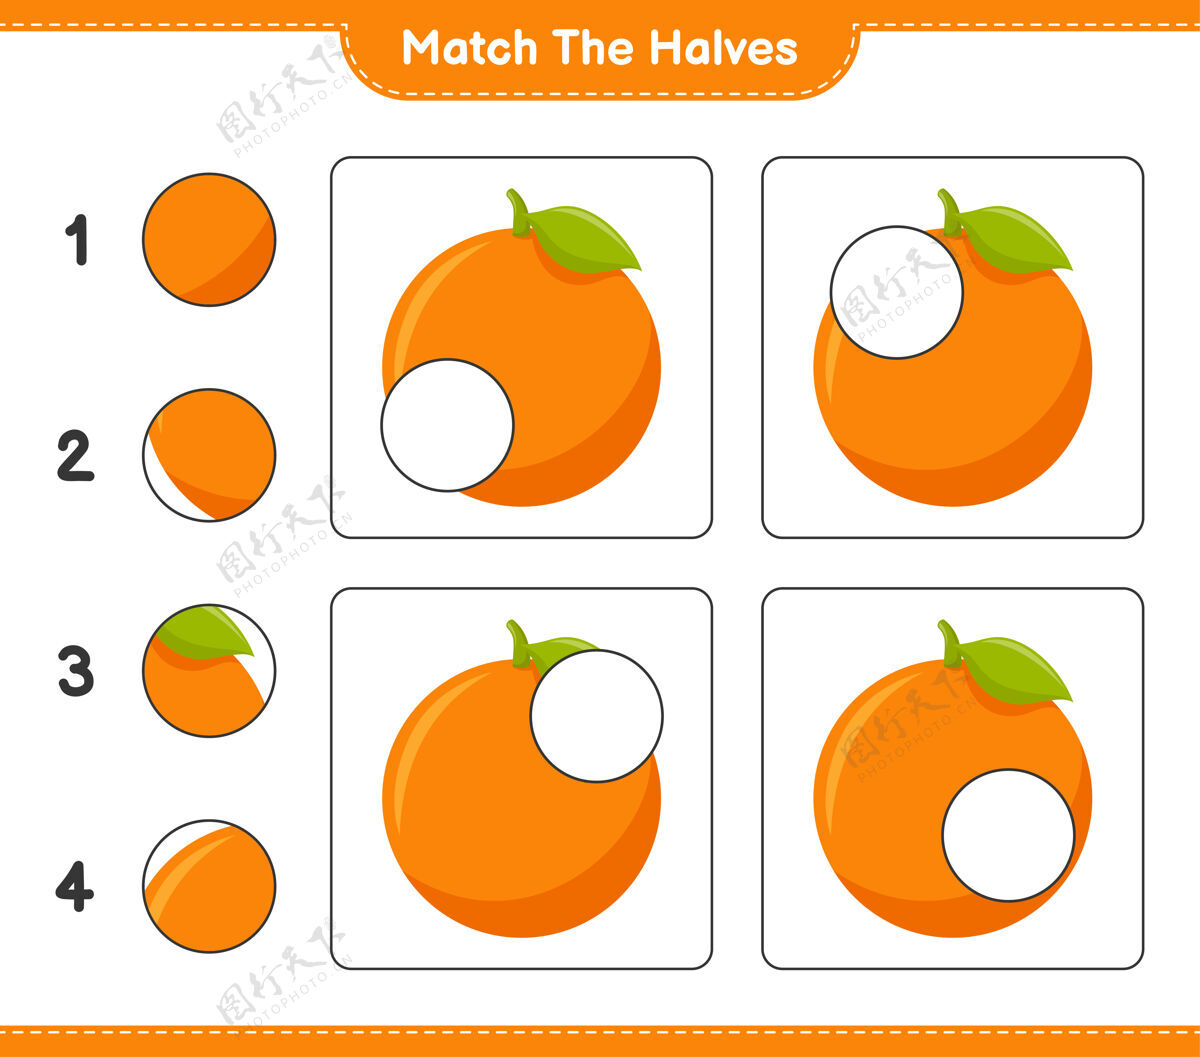 选择匹配对半匹配一半橙色教育儿童游戏 可打印工作表学习学校家庭作业